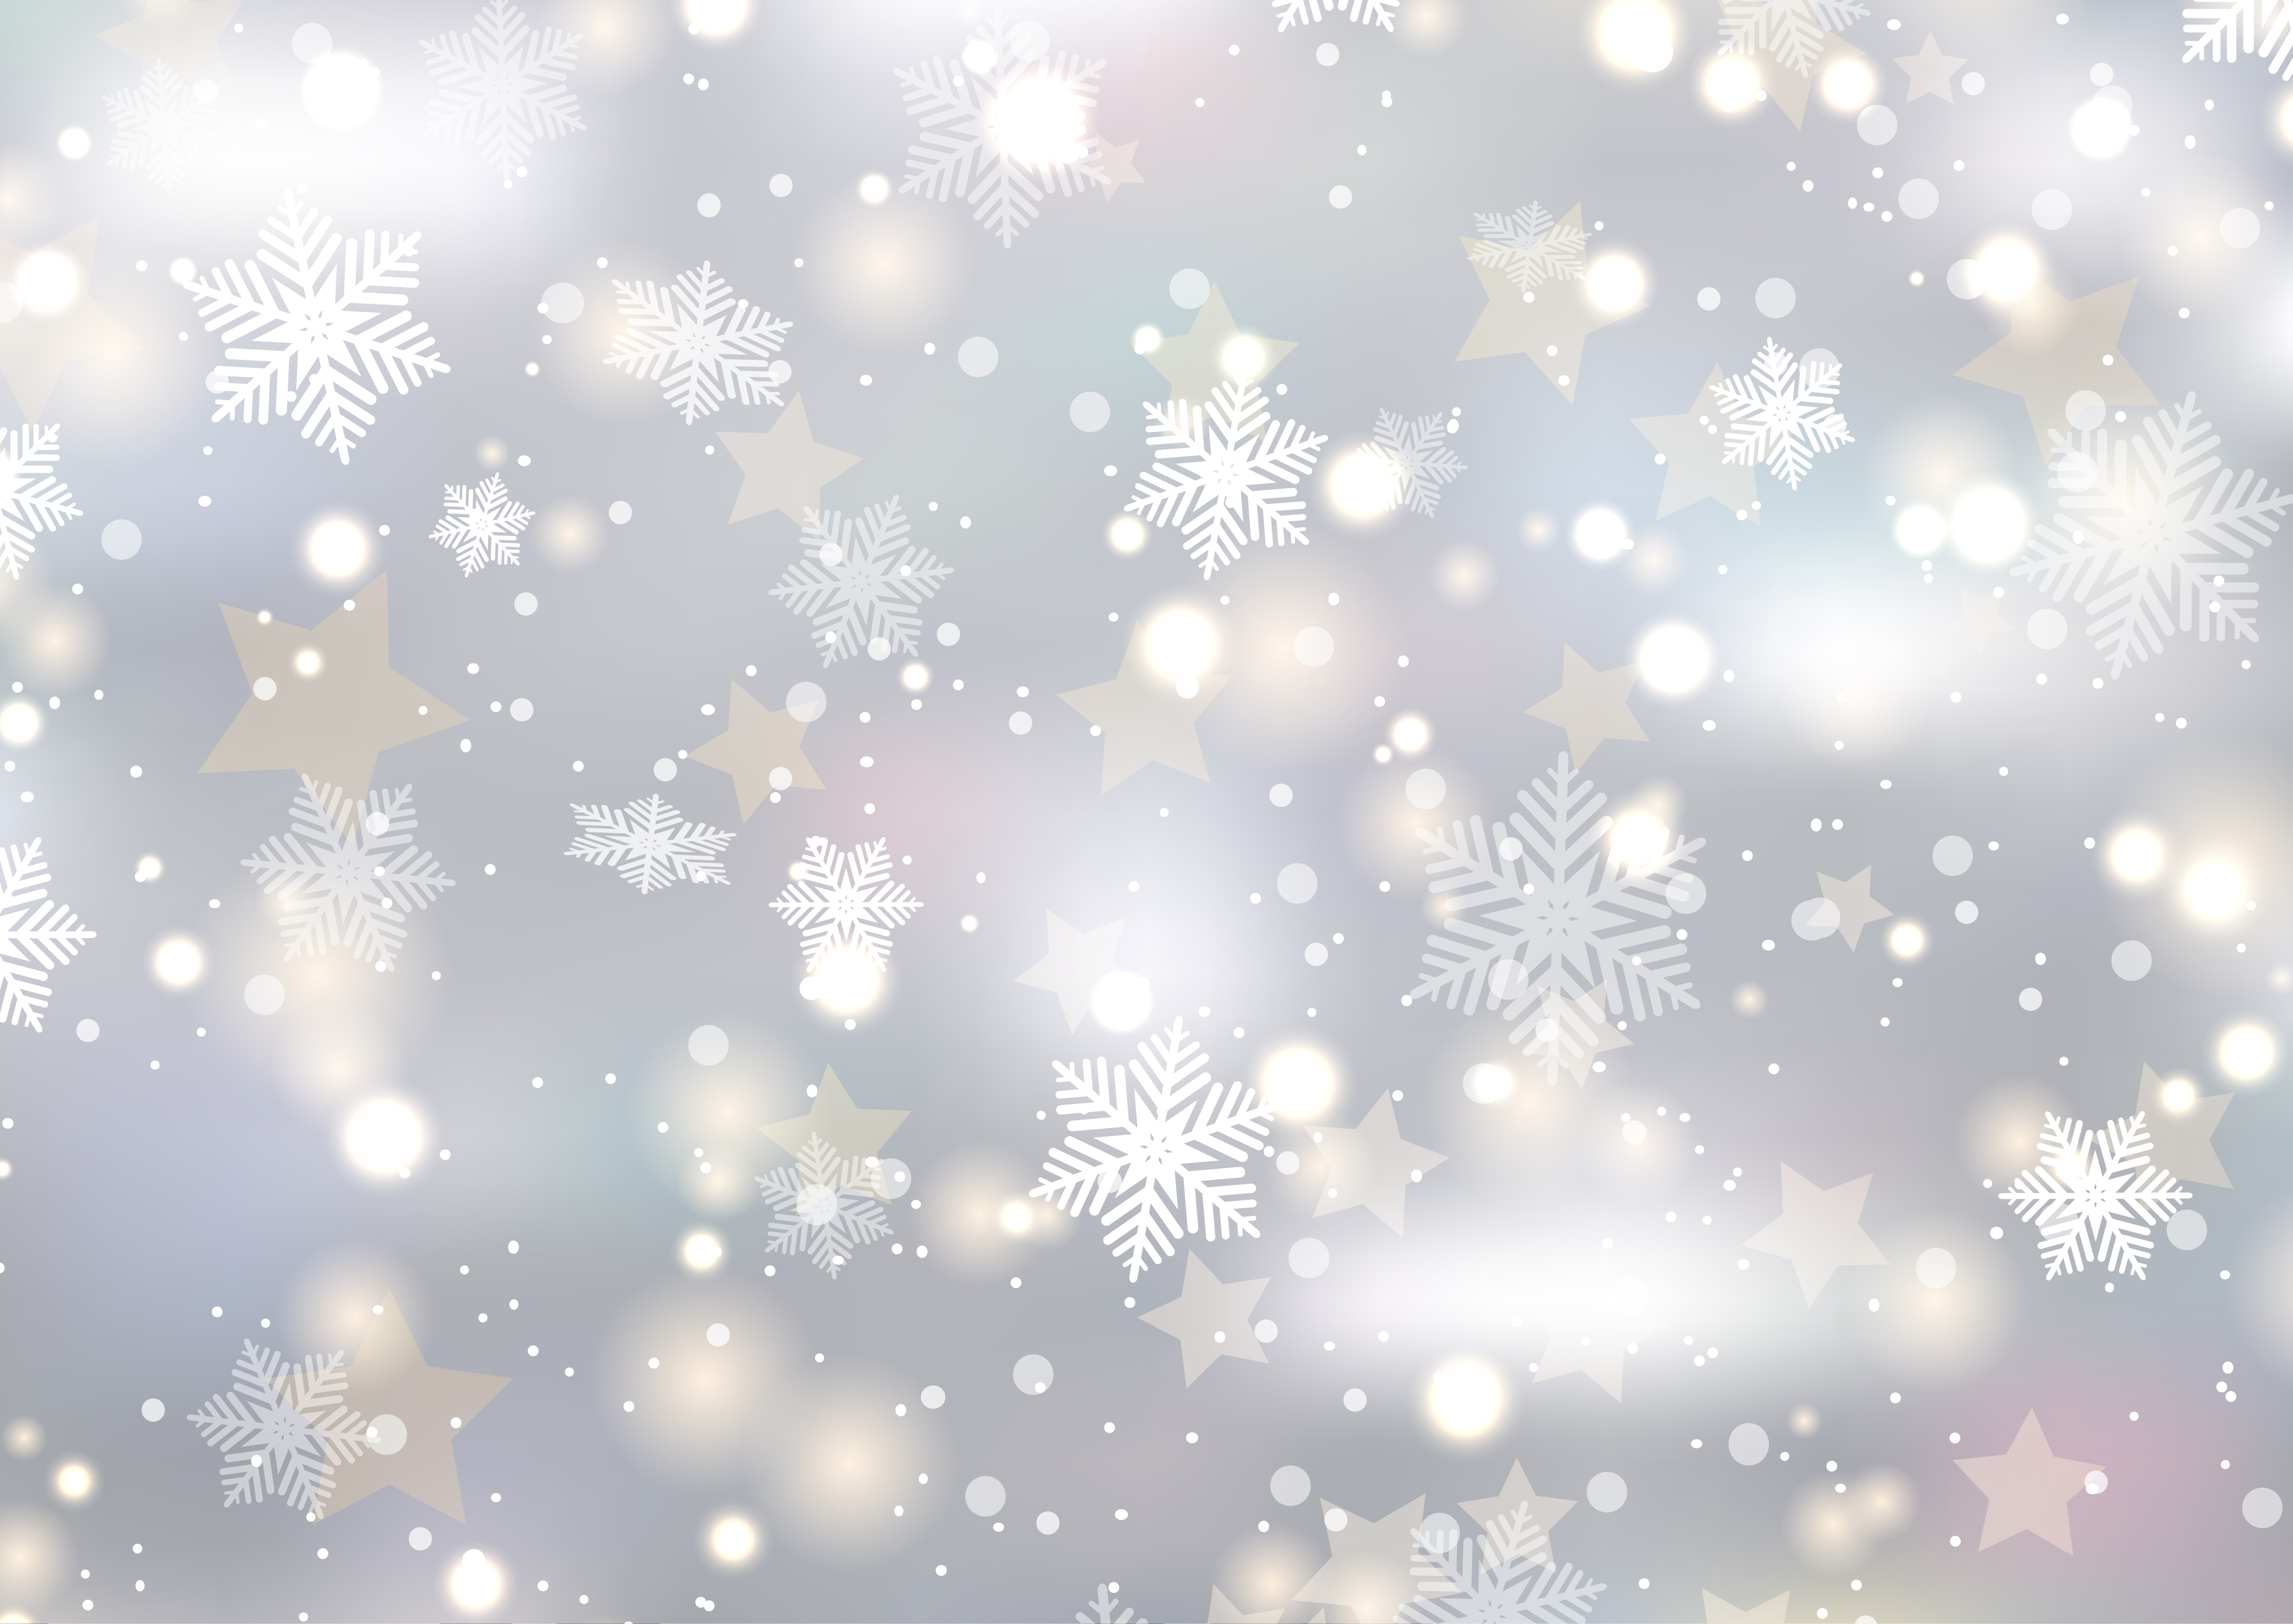 snowflakes christmas noel powerpoint slide template free download